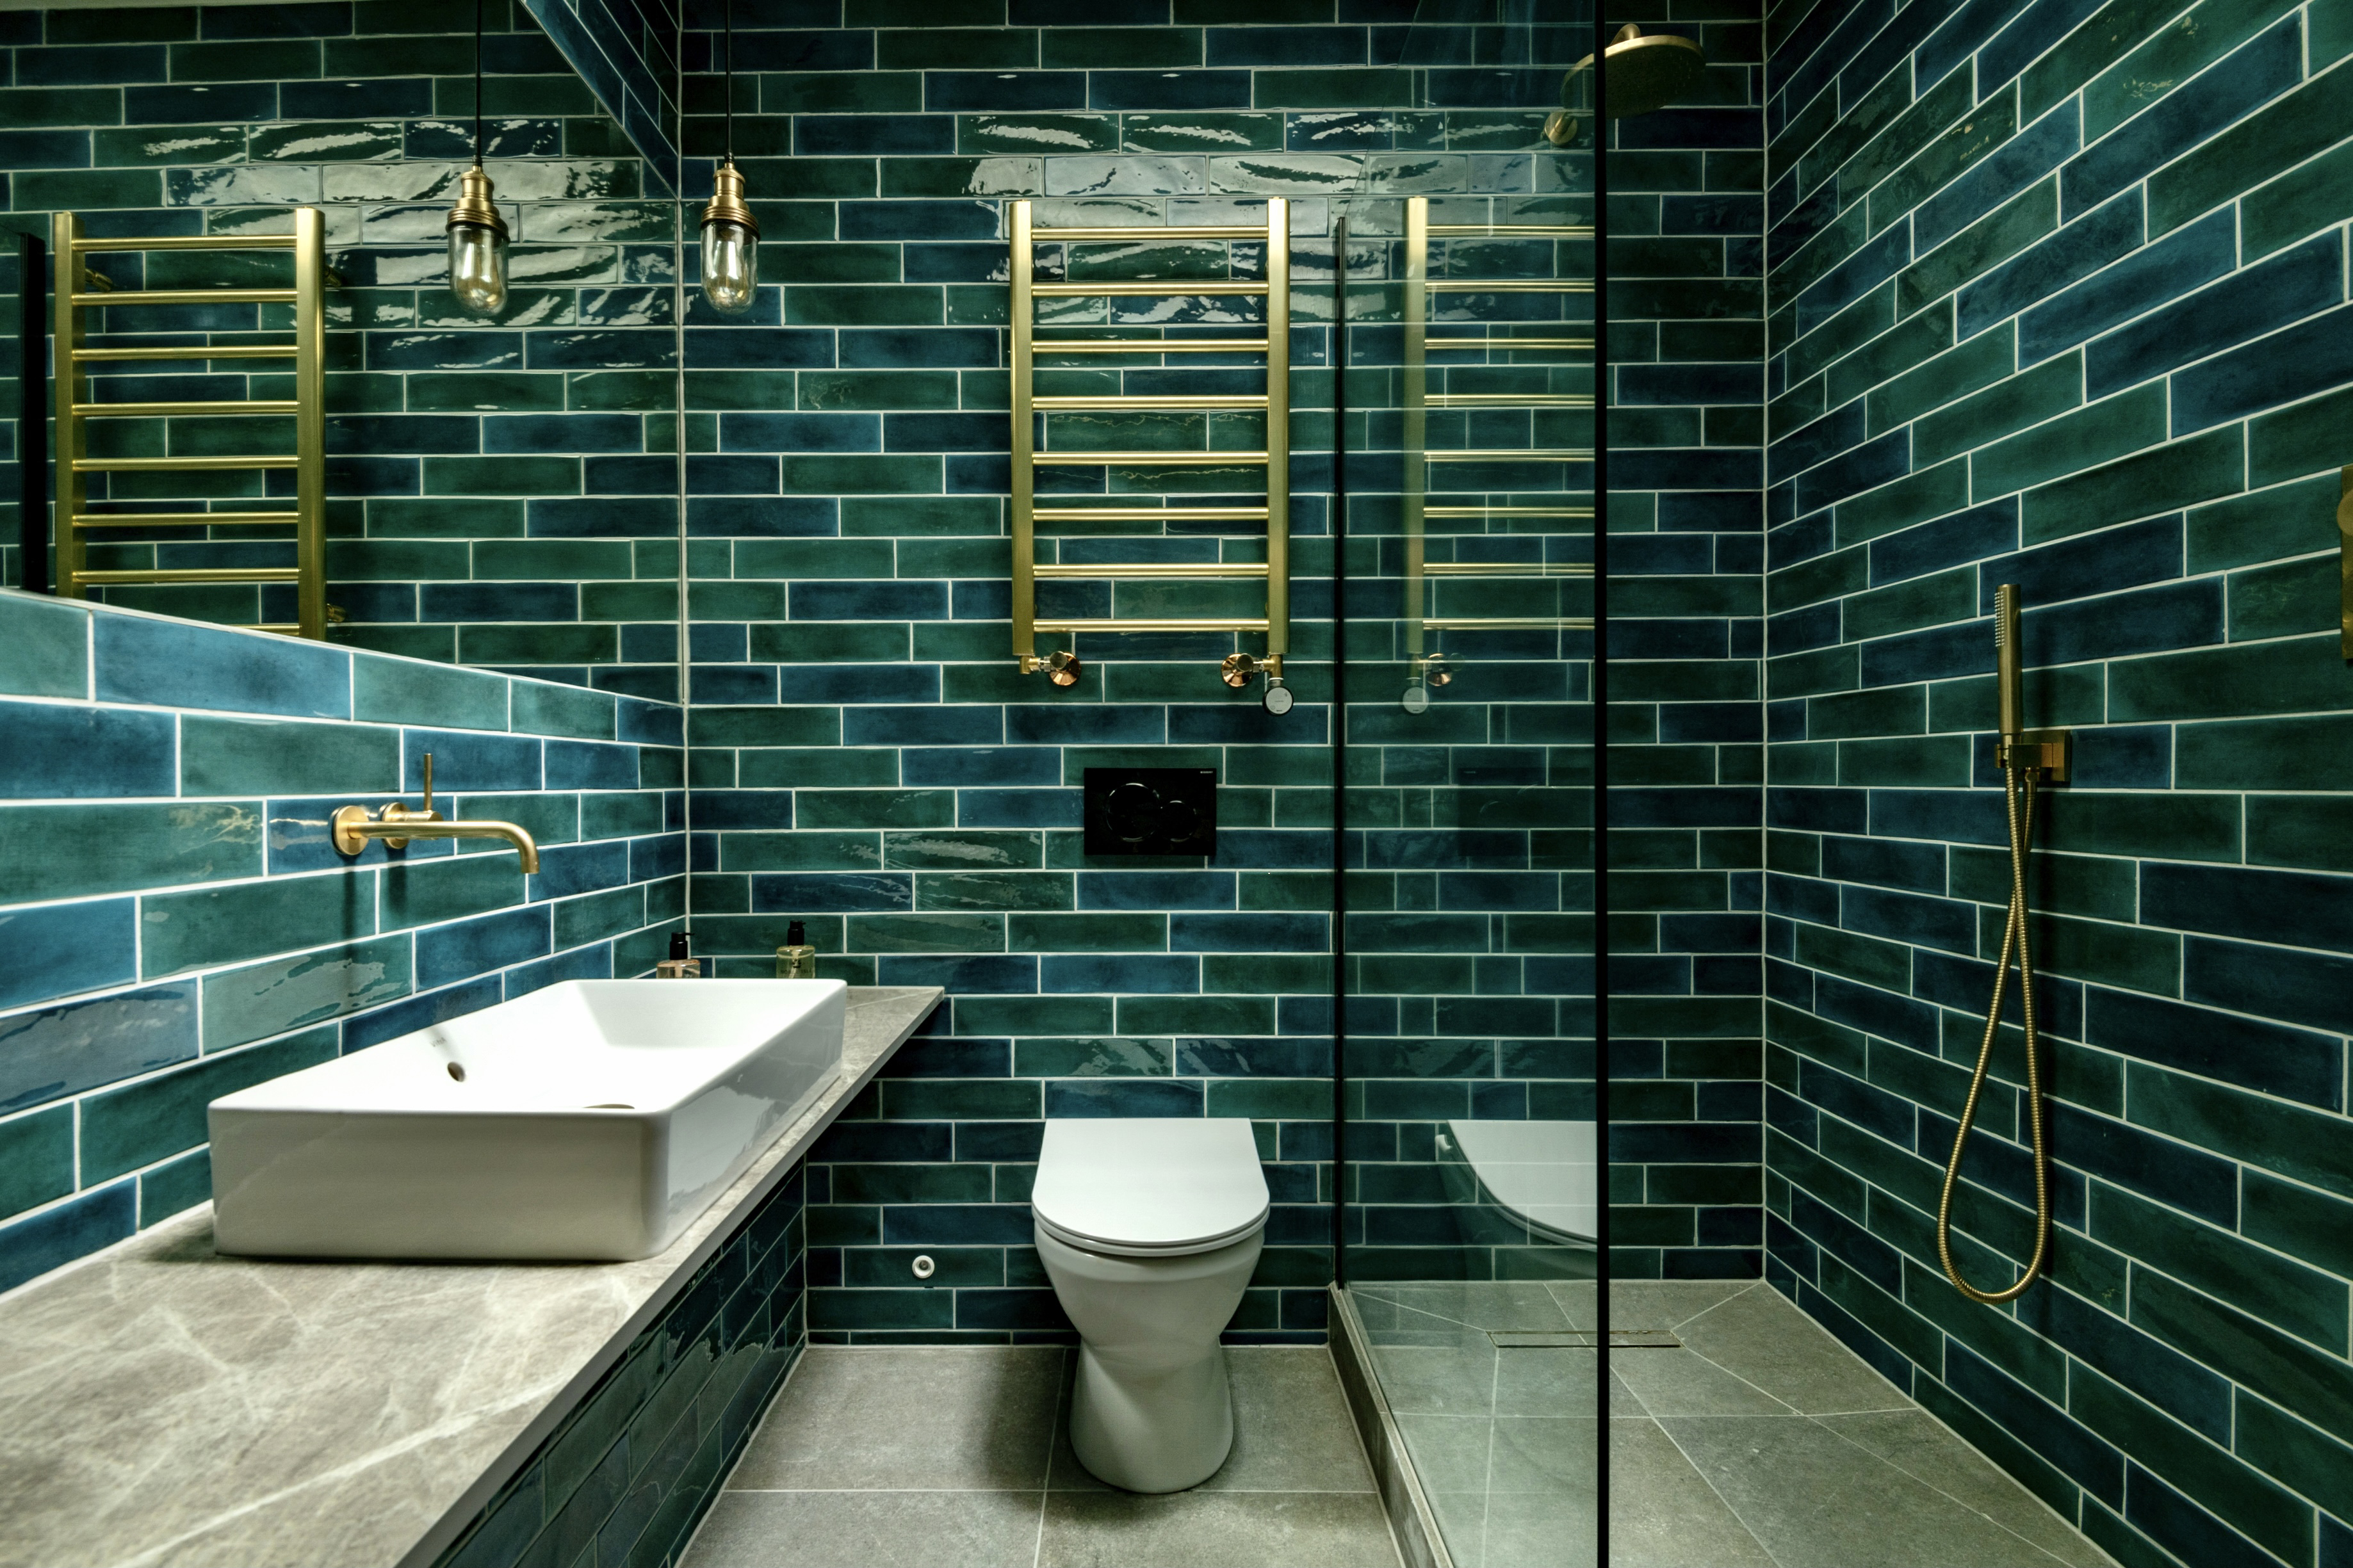 Green Bathroom Ideas 10 Ways To, Green Bathroom Tile